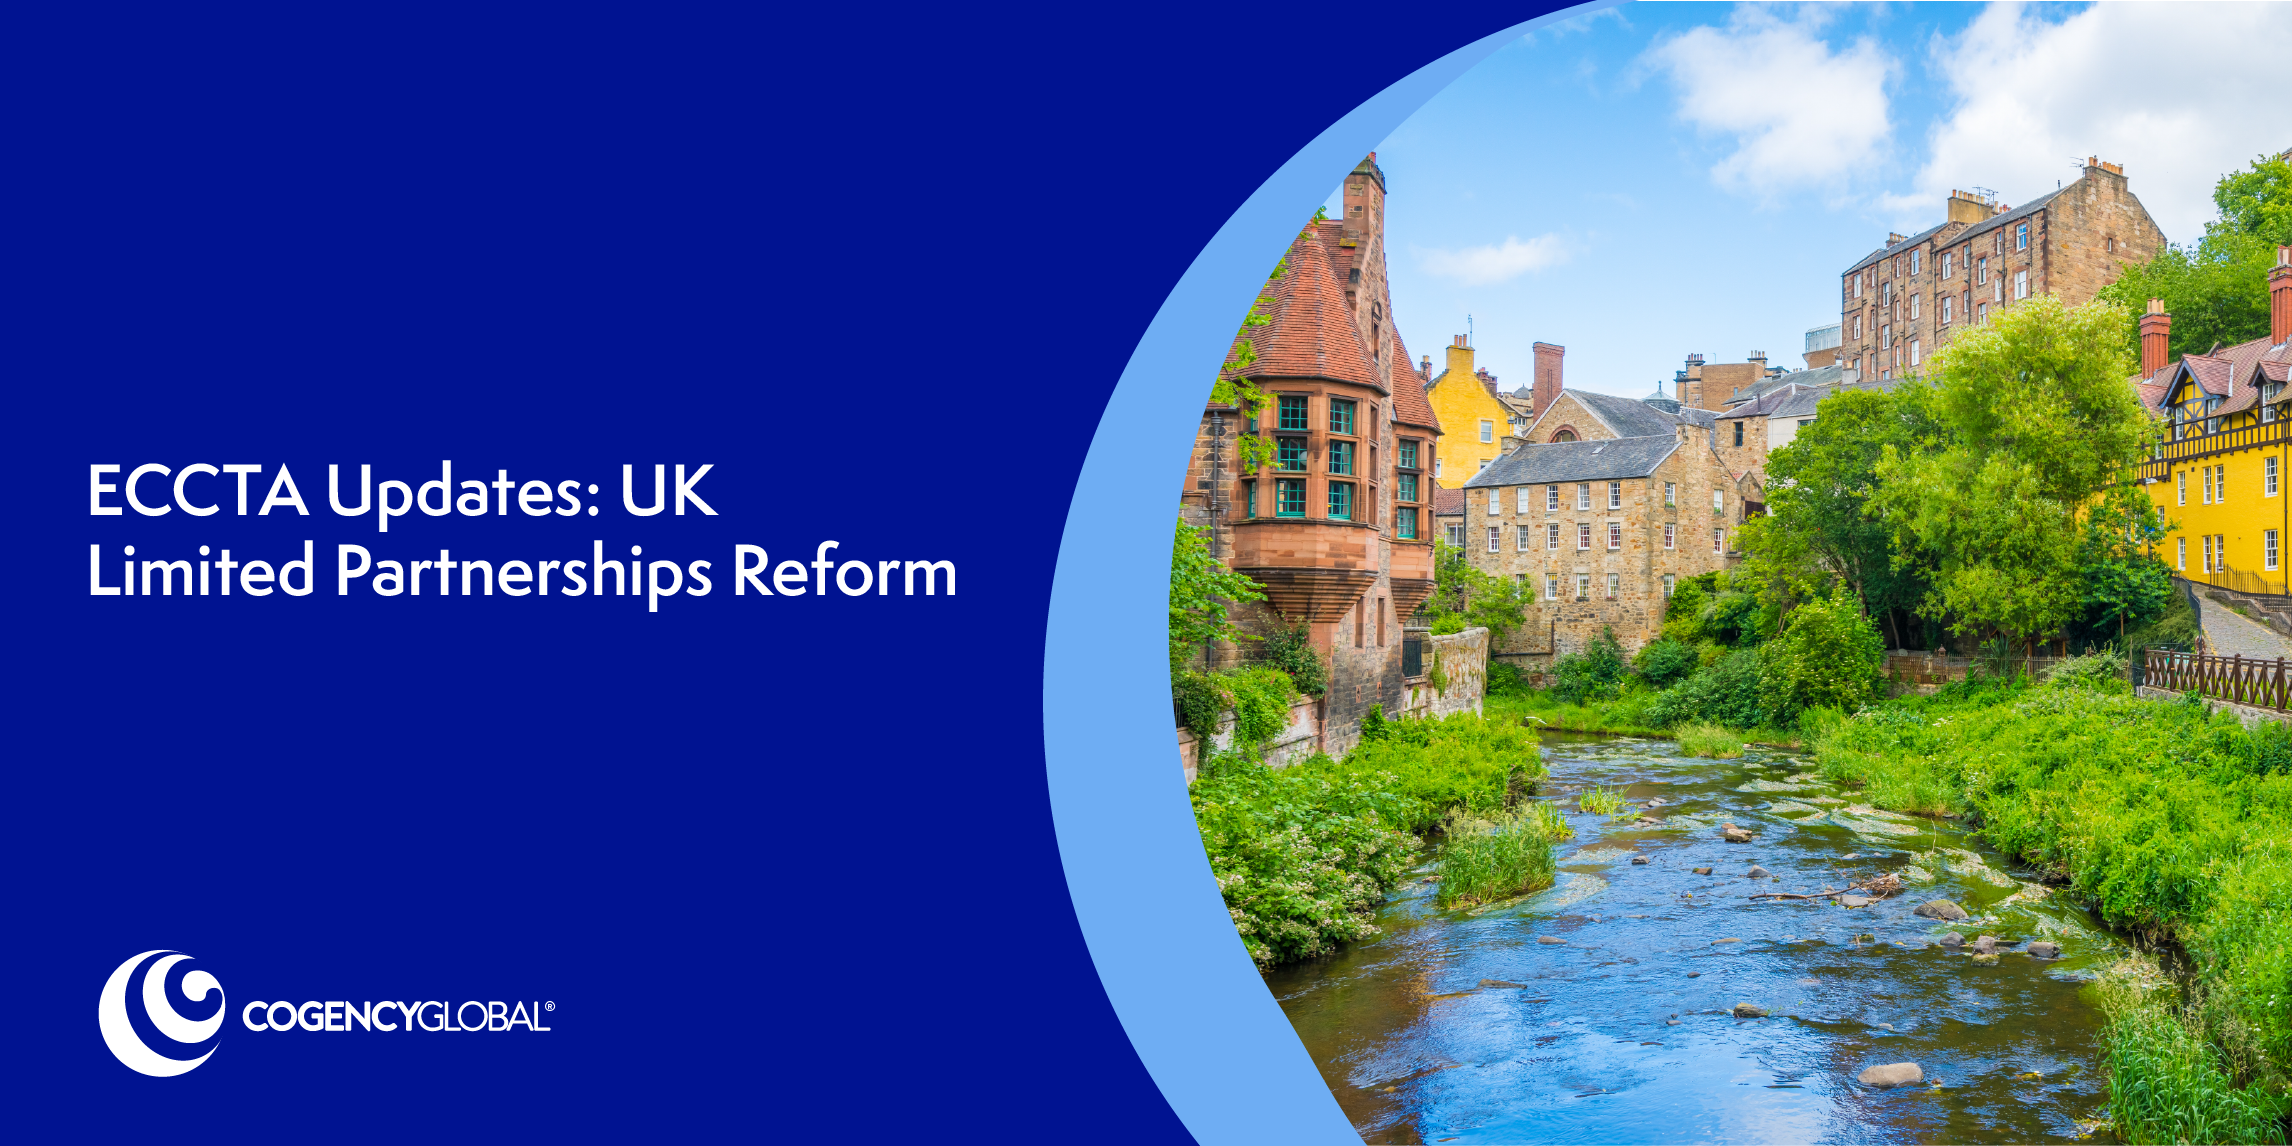 ECCTA Updates: UK Limited Partnerships Reform